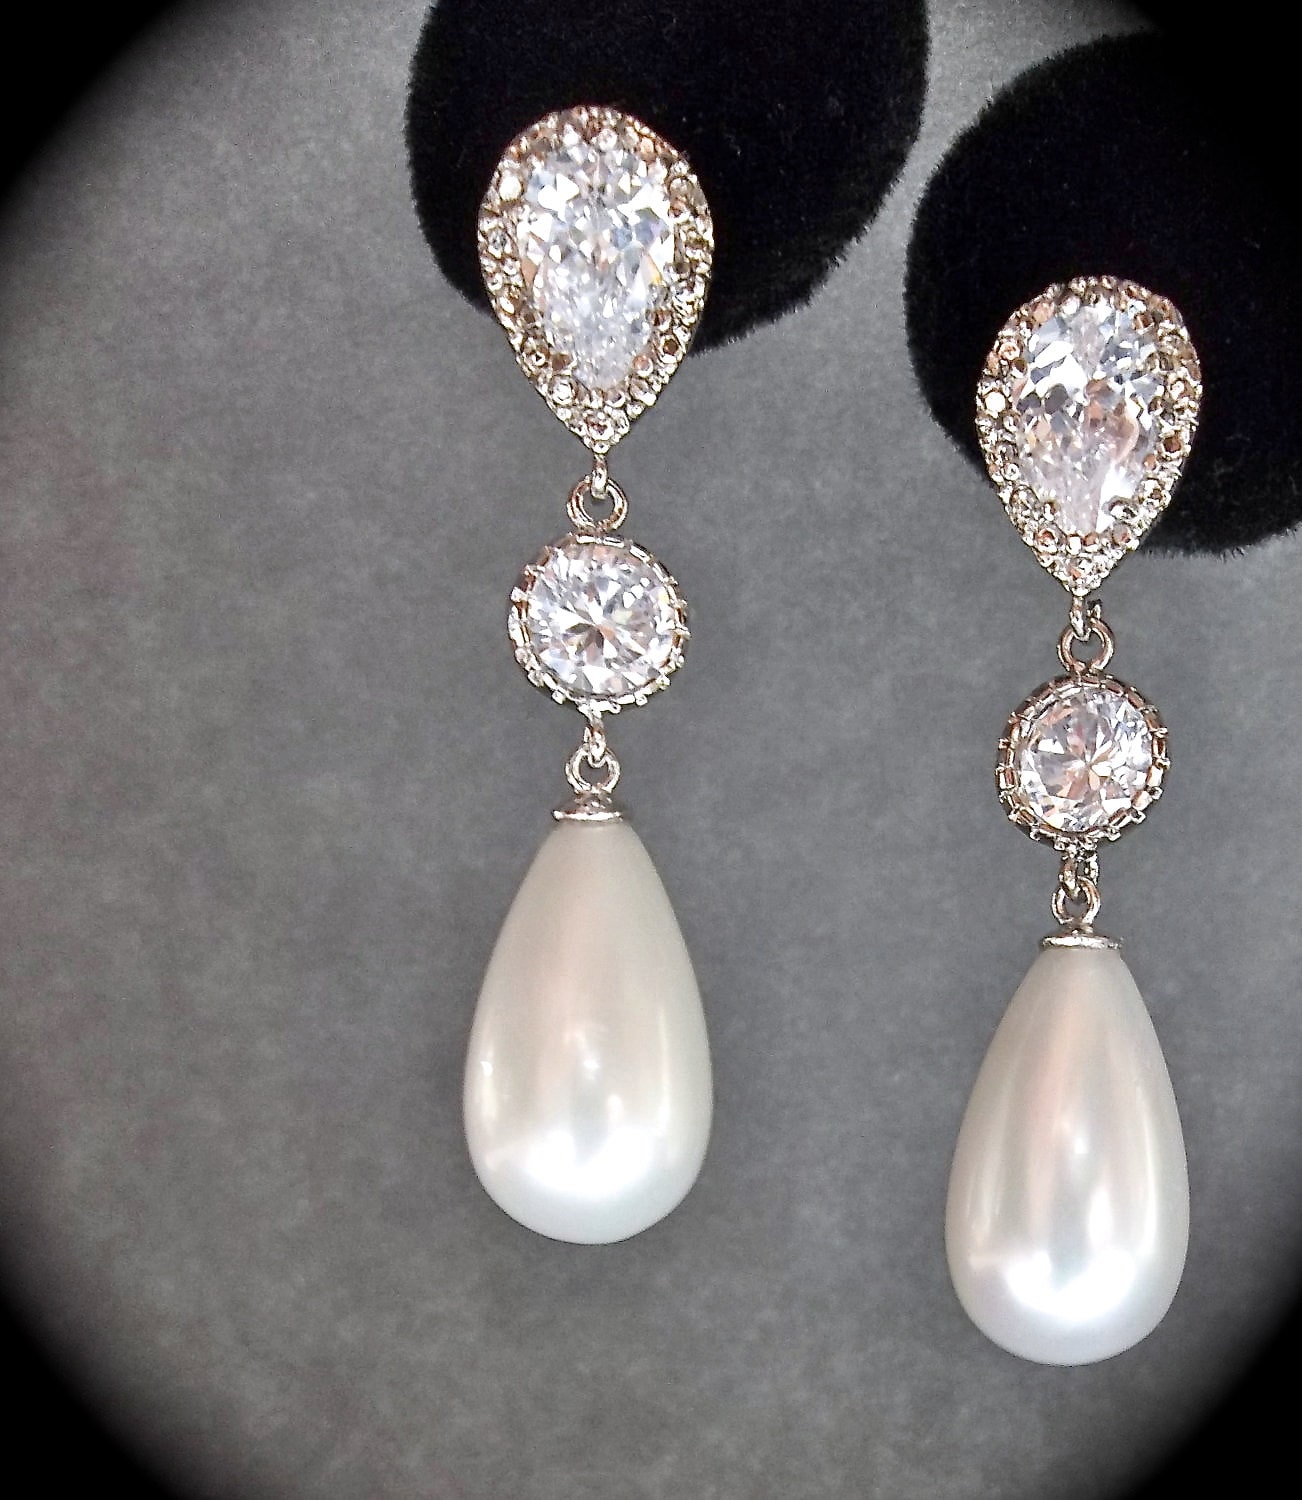 Pearl Drop Earrings // Sterling silver posts by QueenMeJewelryLLC